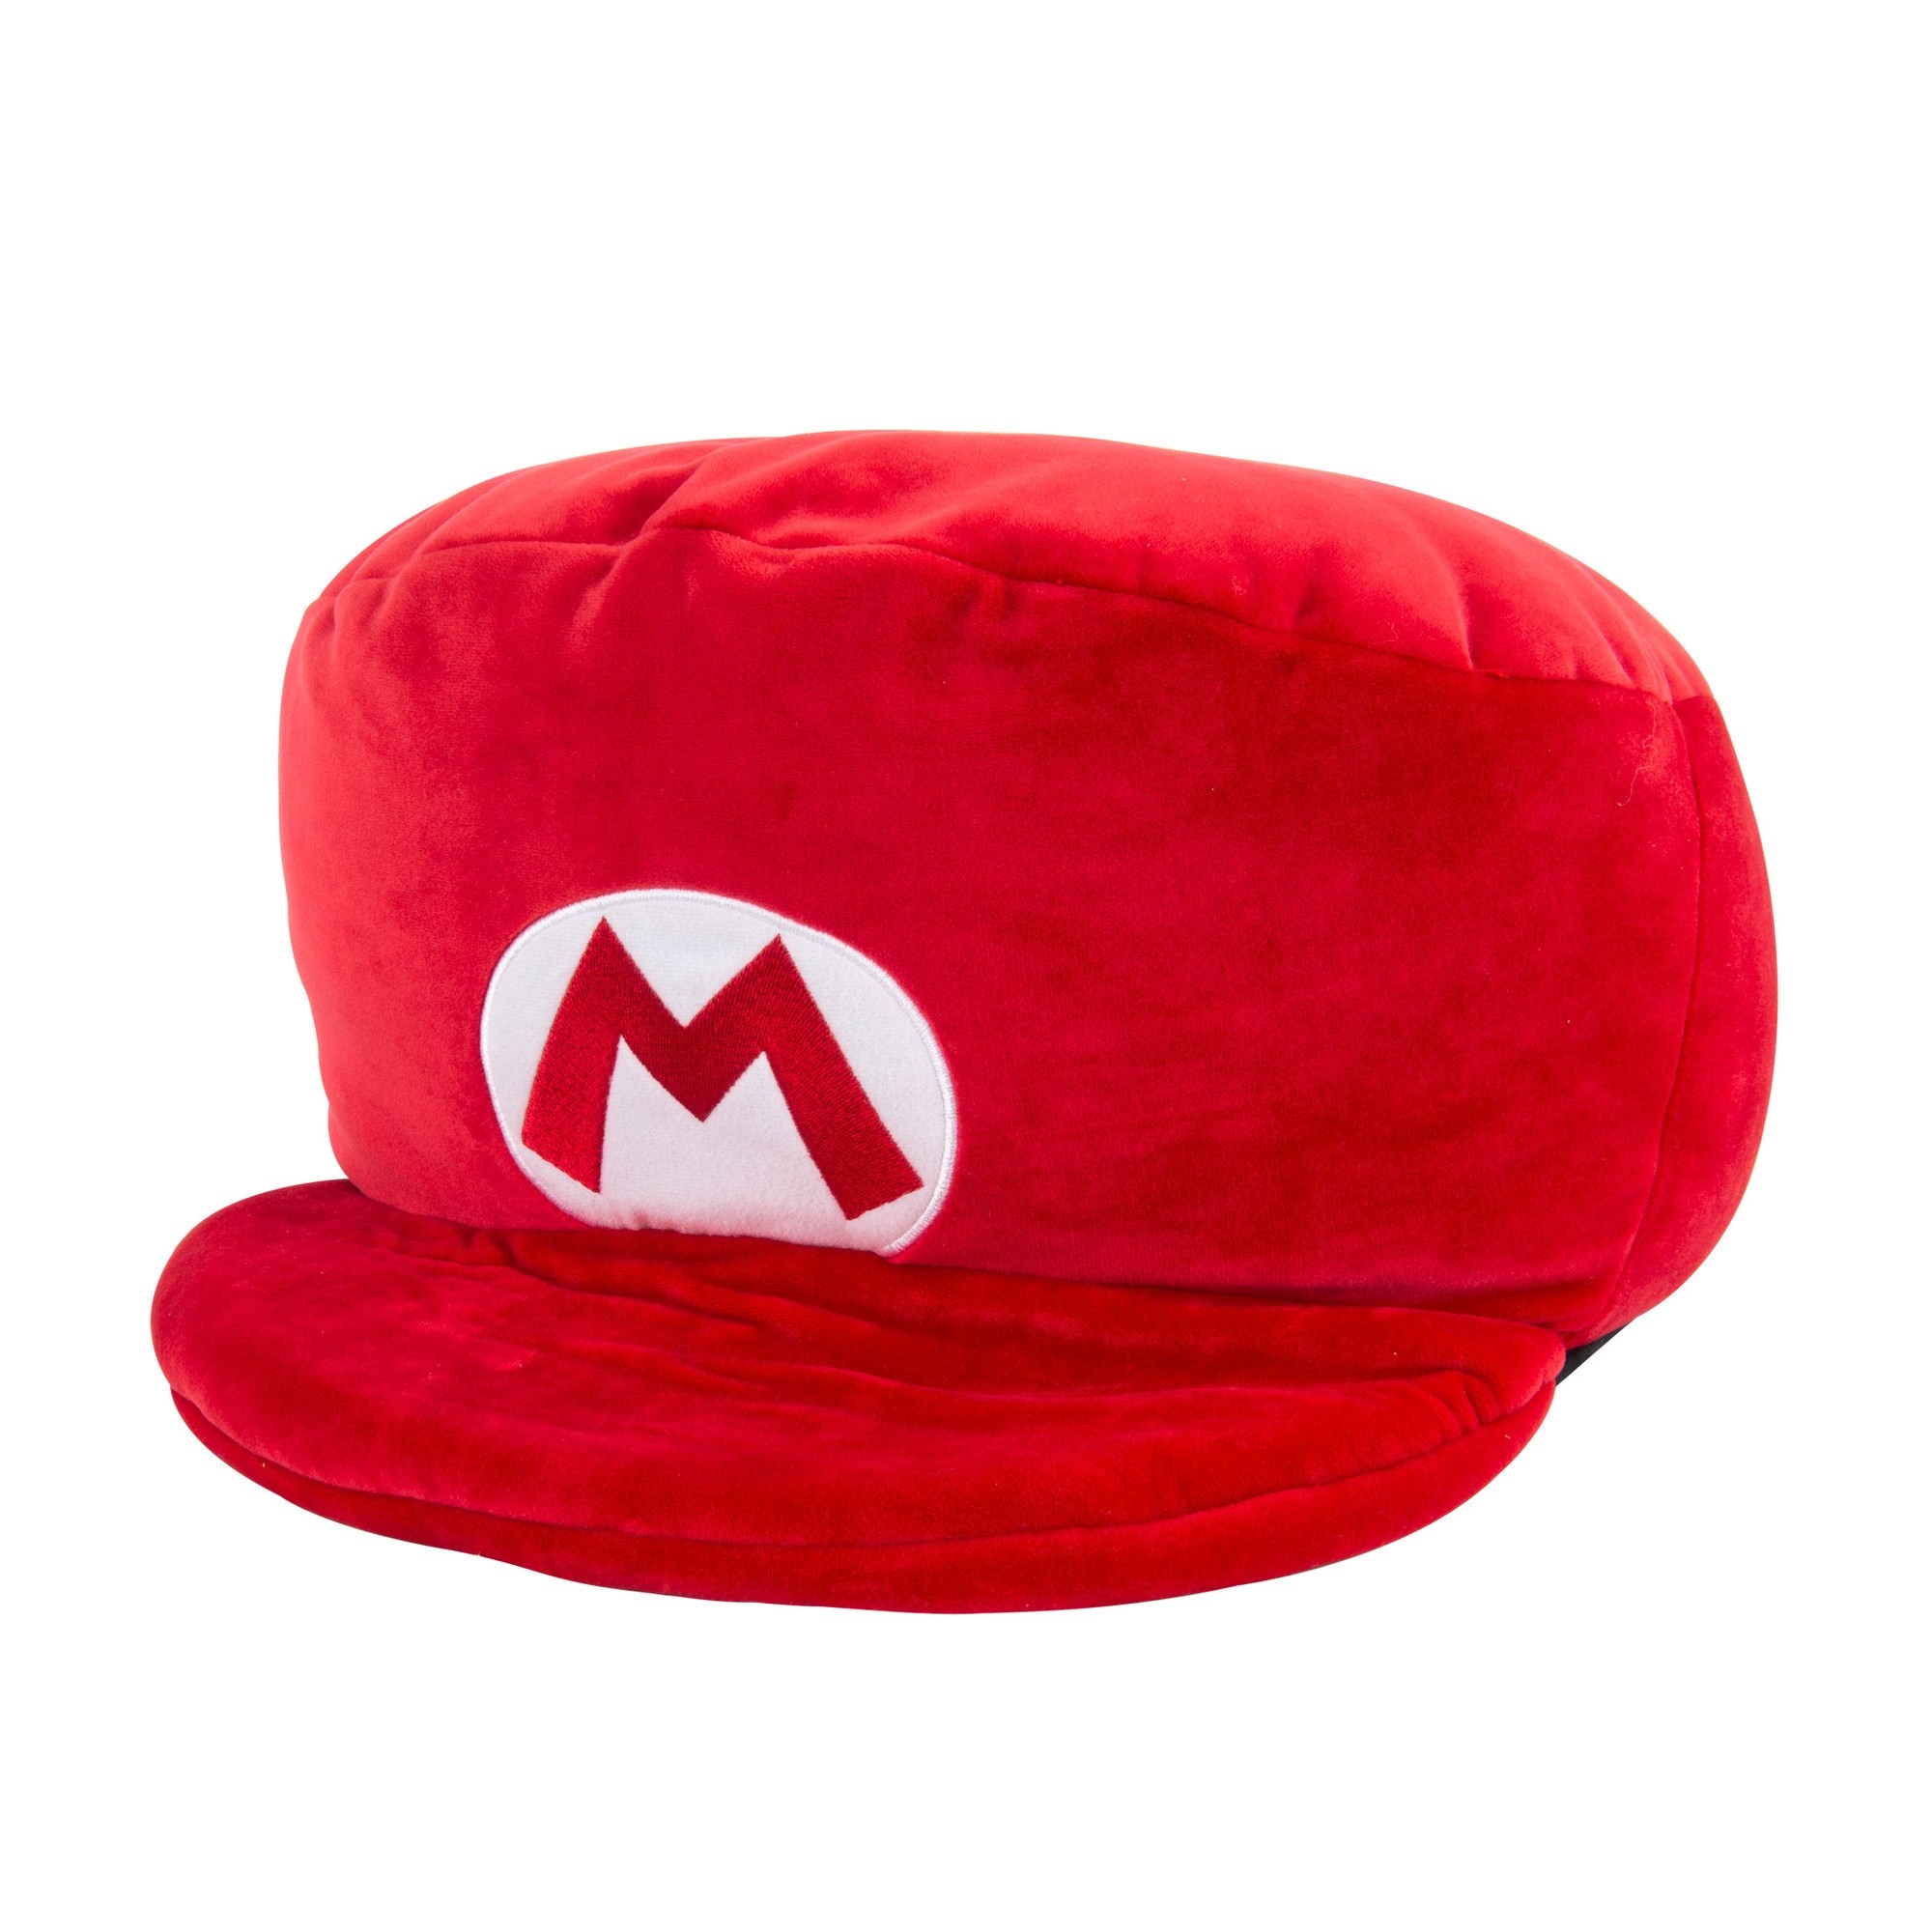 Mocchi-Mocchi Super Mario Bros Mario Mega Hat Plush